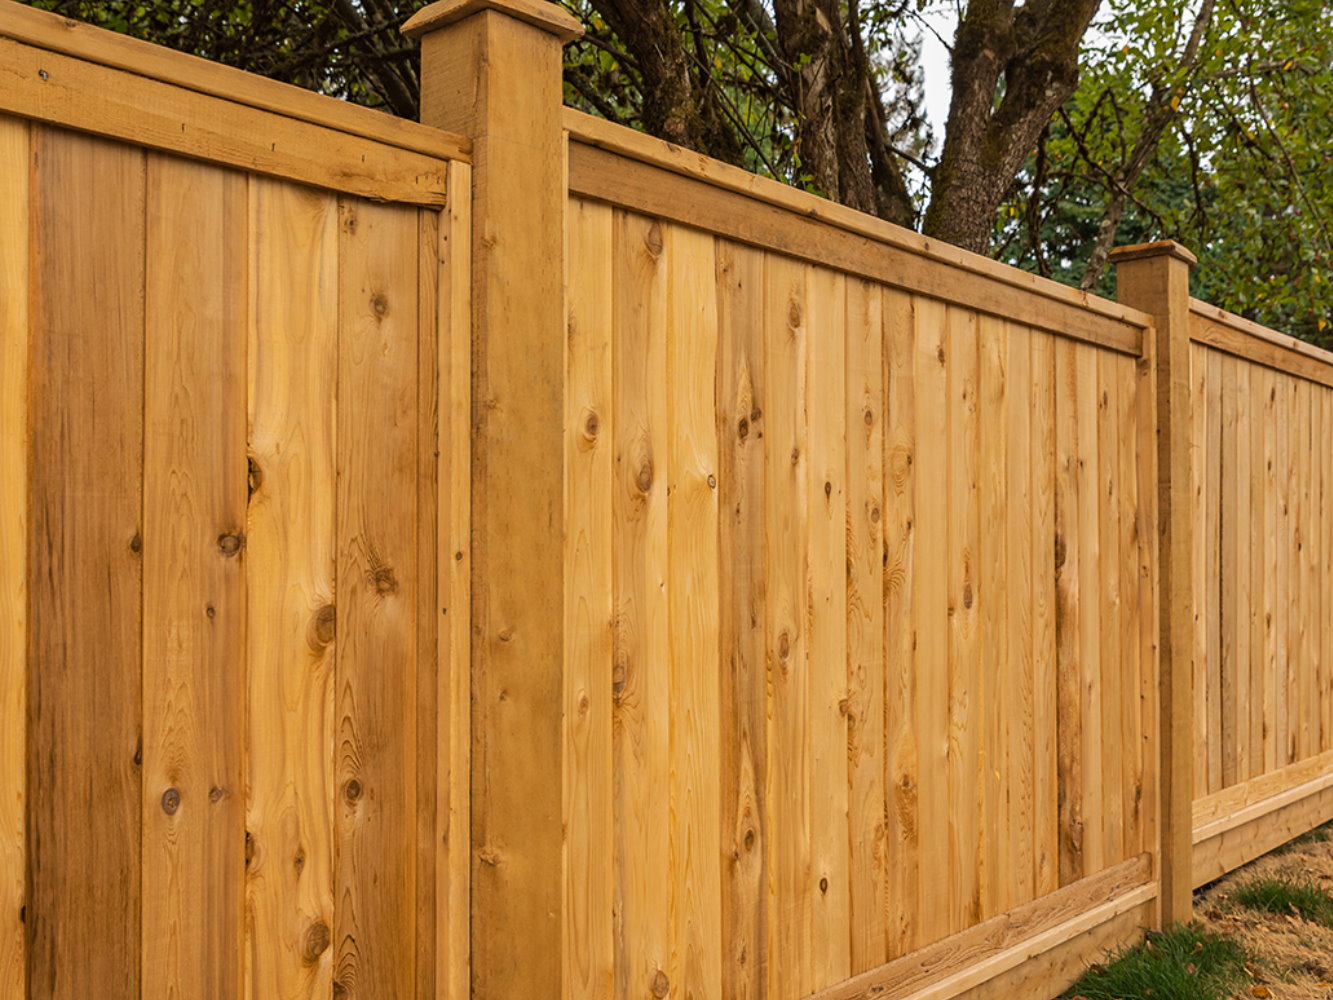 Hazlehurst GA cap and trim style wood fence